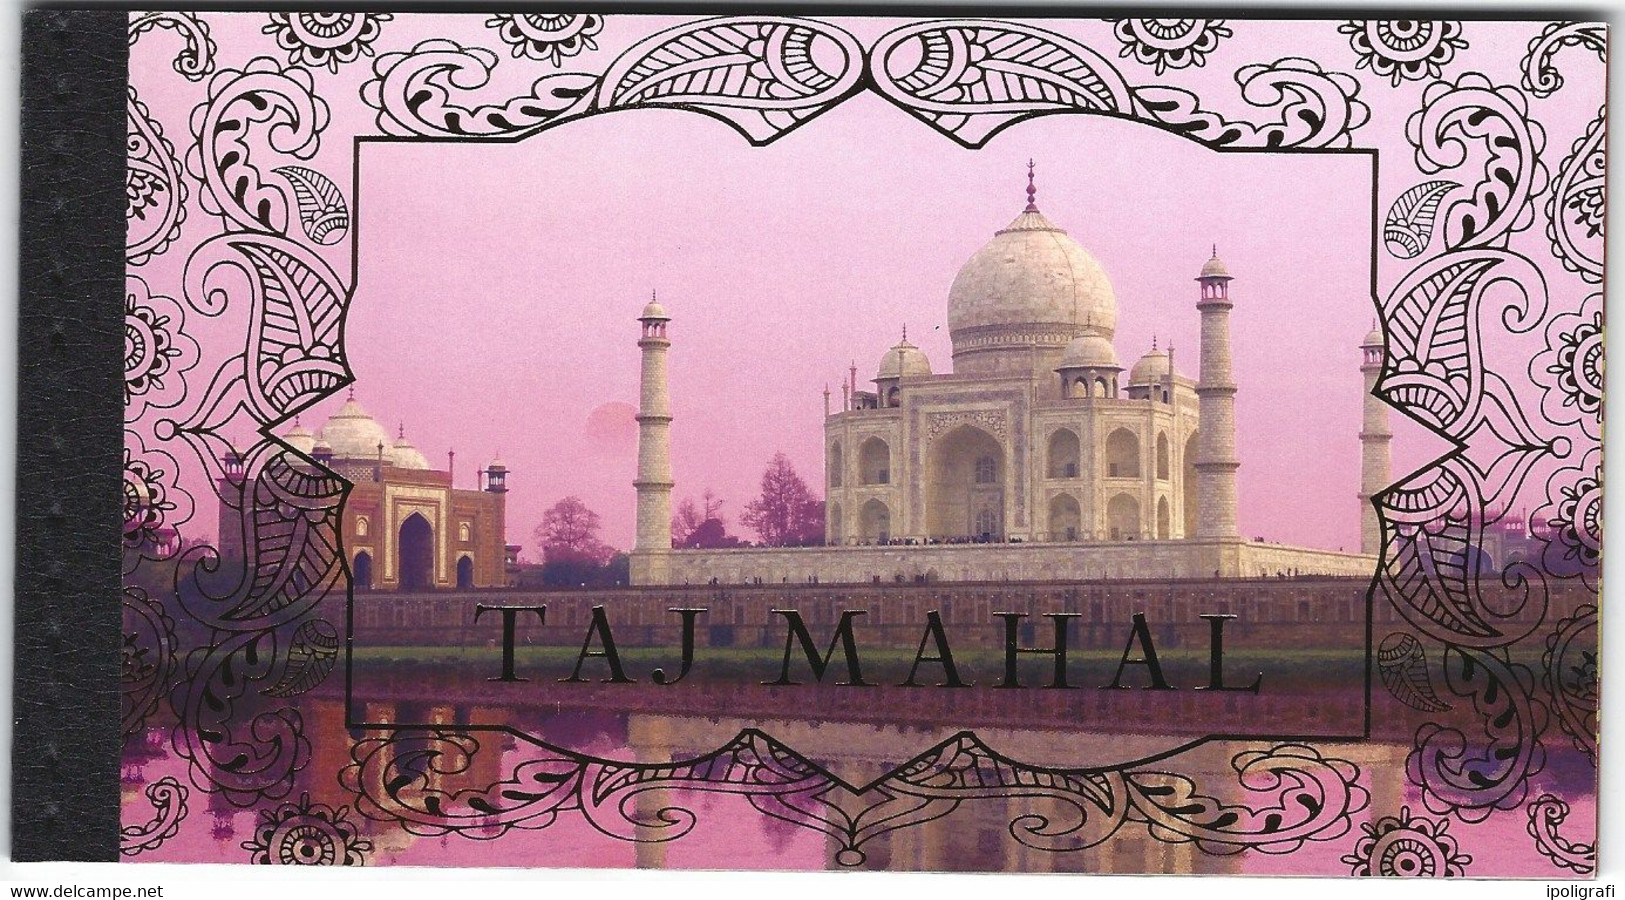 ONU Ginevra 2014 Unesco Patrimonio Mondiale: India, Il Taj Mahal Carnet Prestige - Booklets